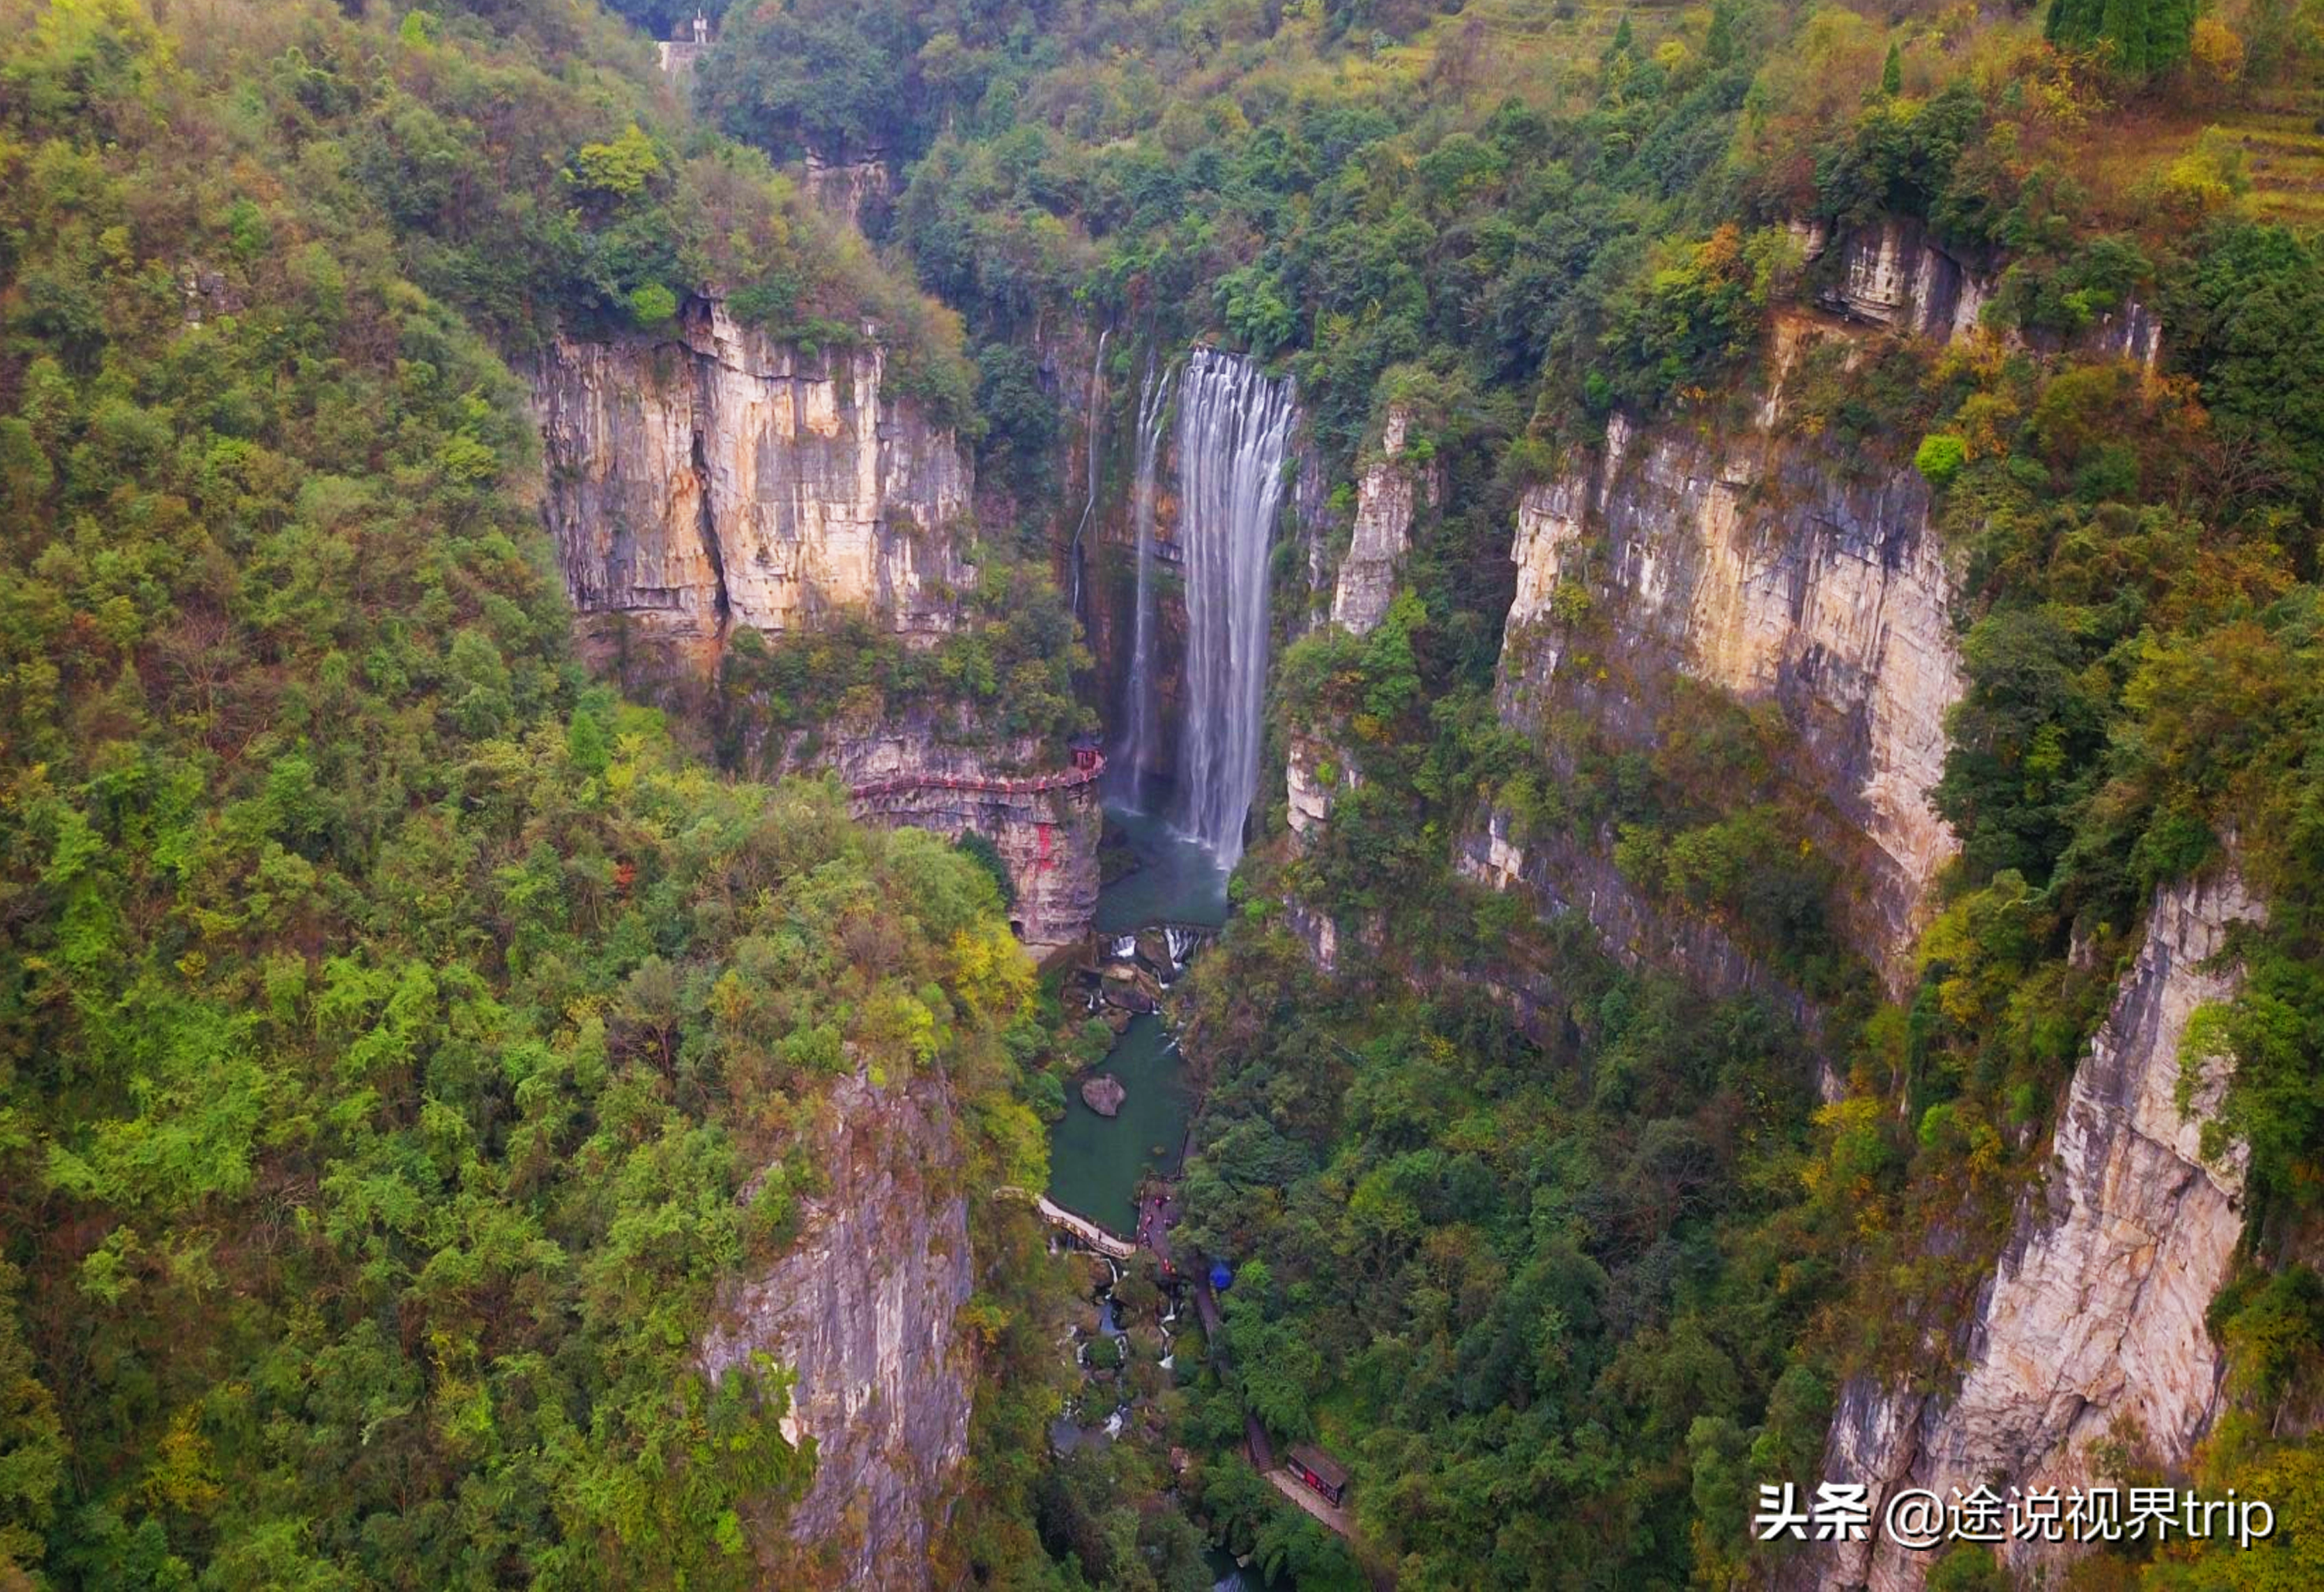 7,赤水大瀑布赤水大瀑布又名十丈洞瀑布,位于贵州省赤水市南部,赤水河